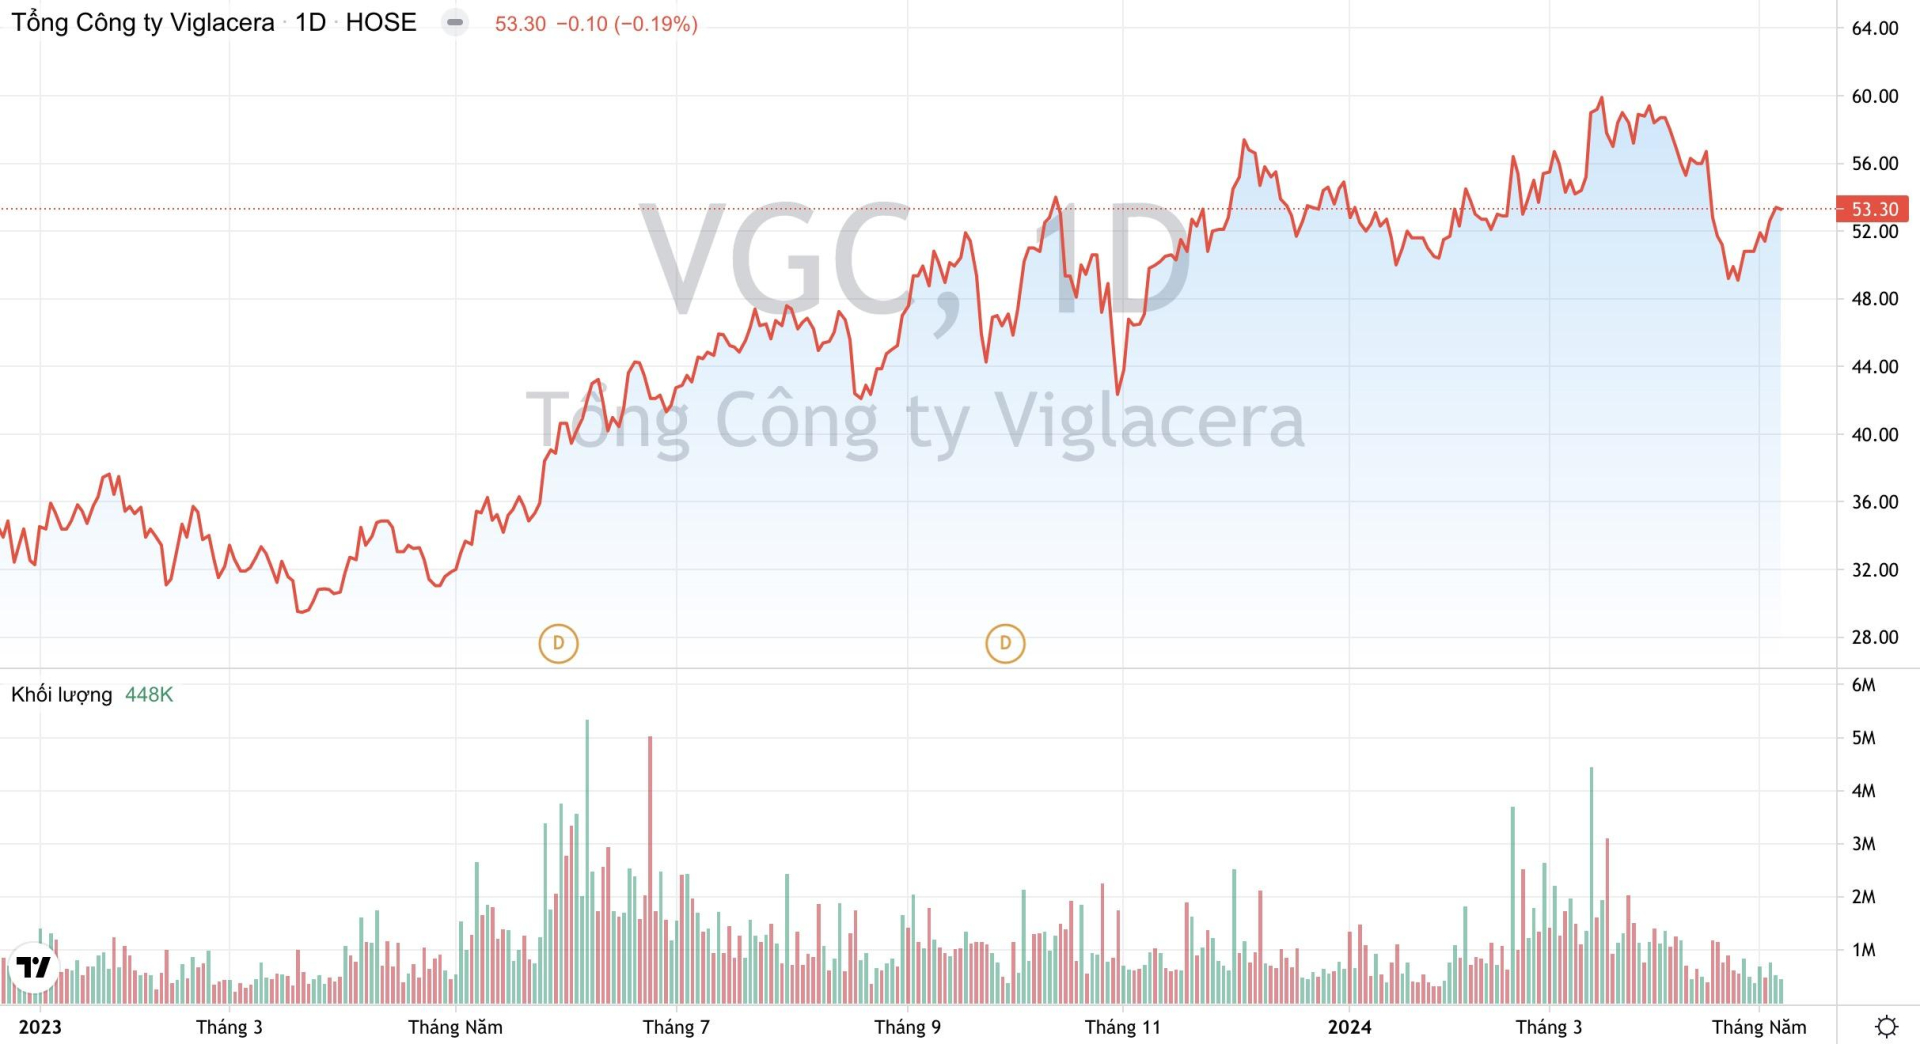 Khối lượng giao dịch cùng xu hướng giá cổ phiếu VGC của Tổng Công ty Viglacera kể từ đầu năm 2023 đến nay. (Nguồn: TradingView)